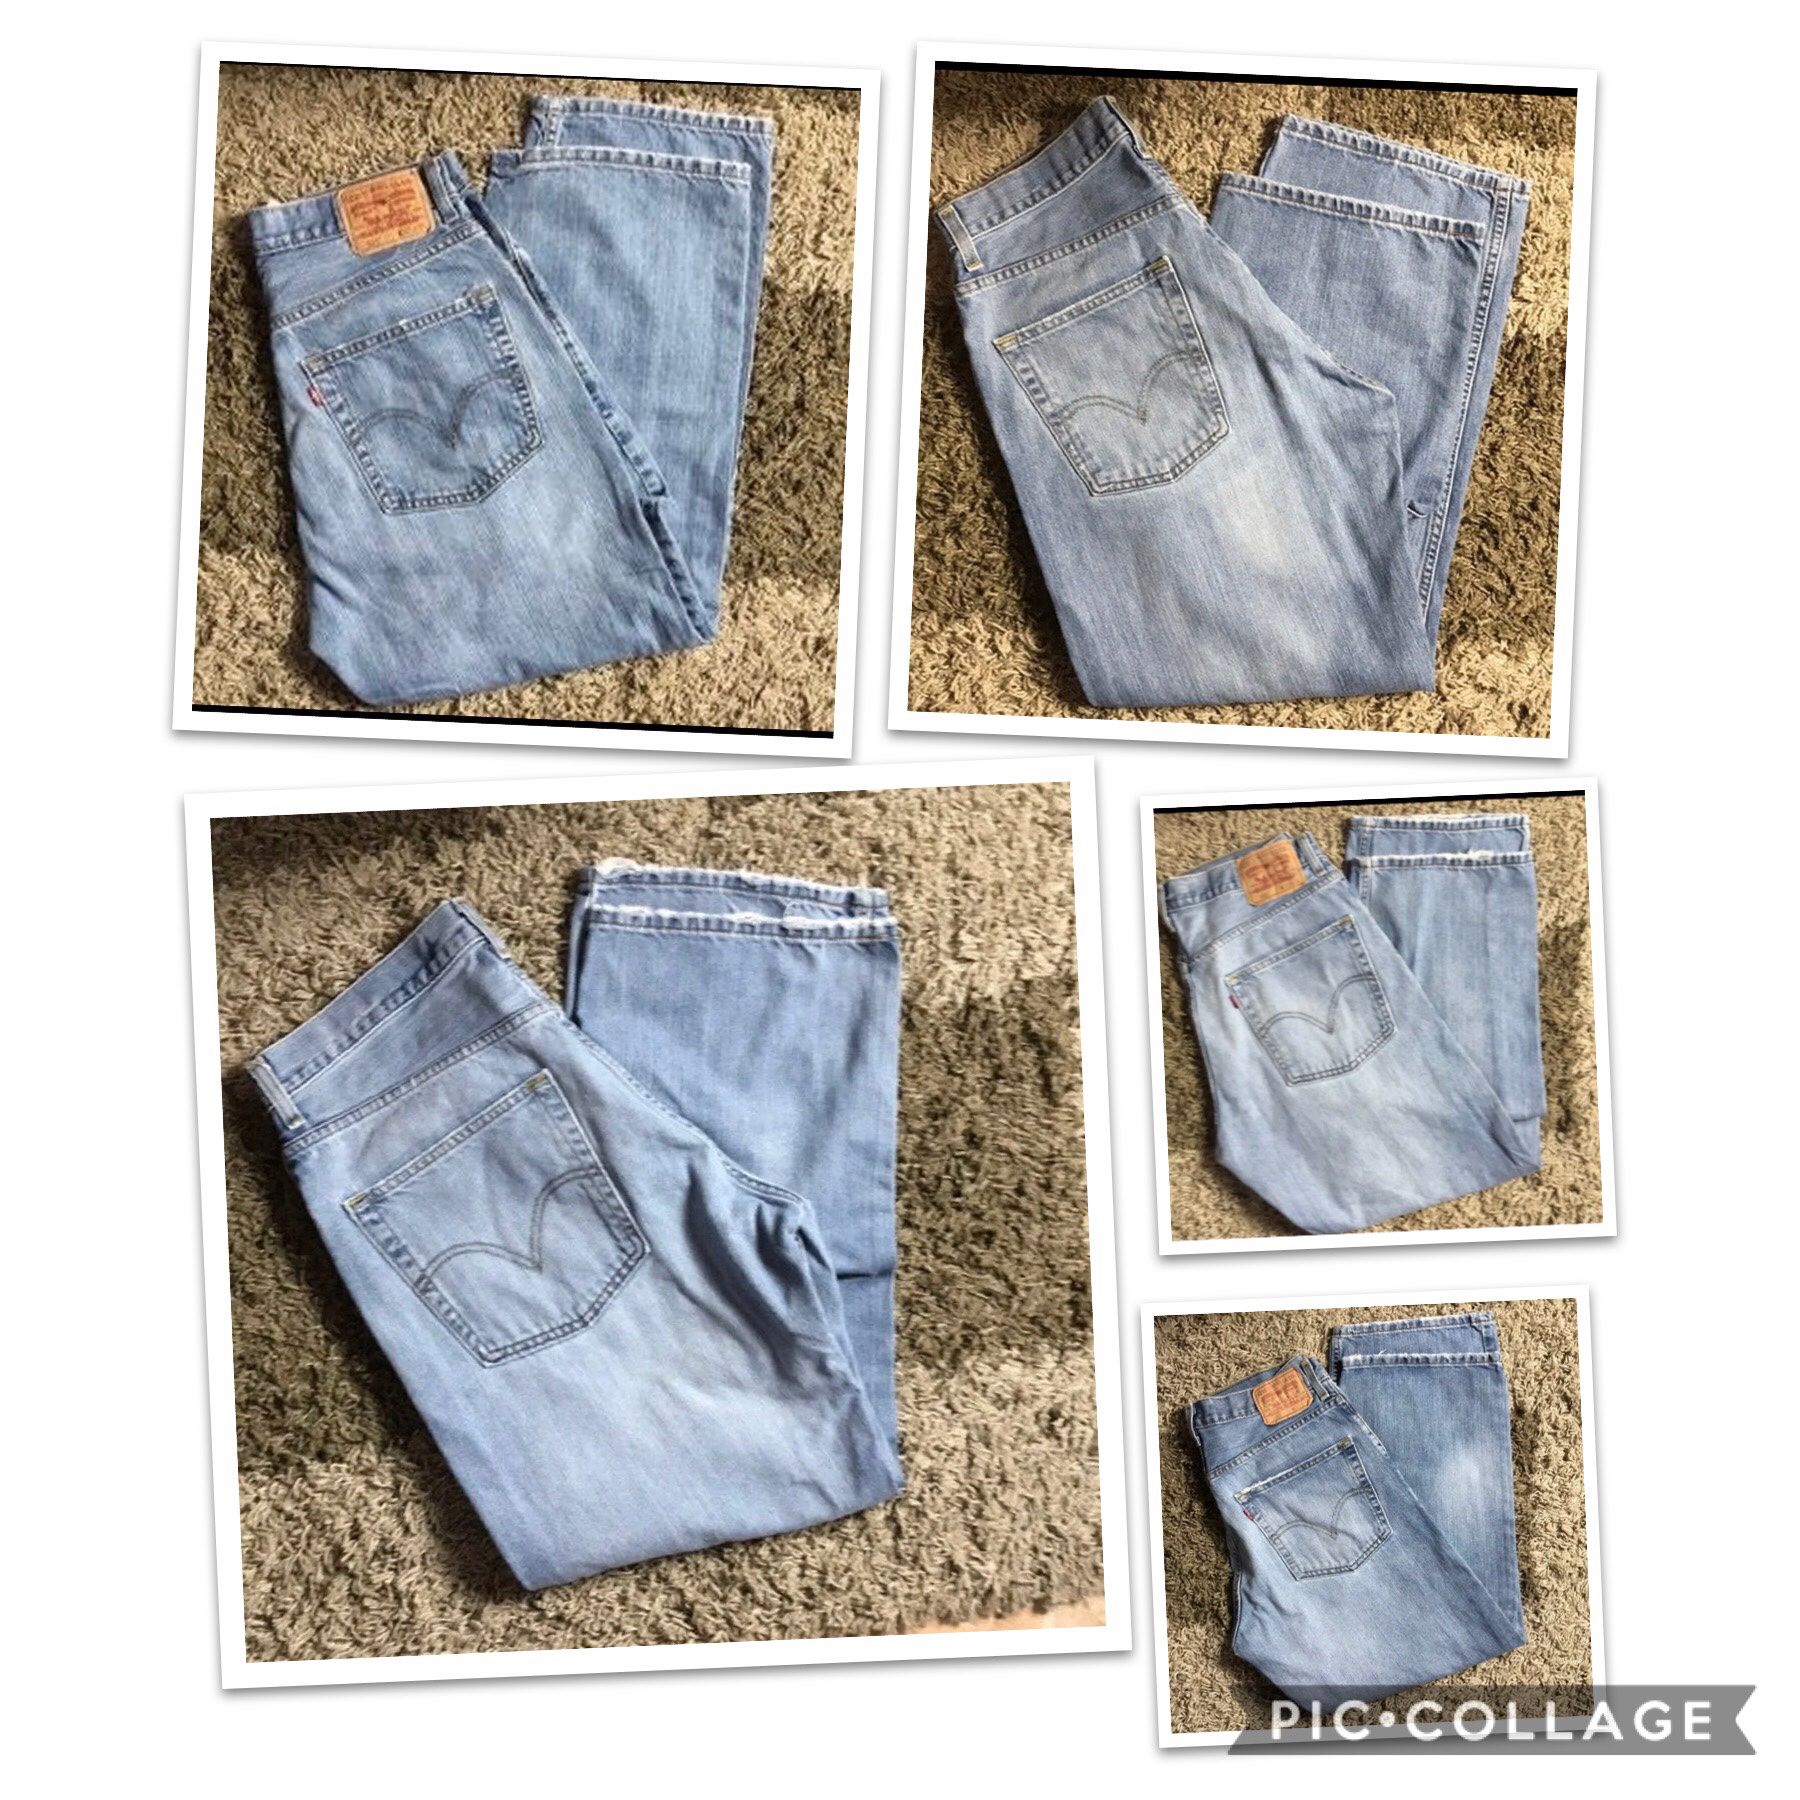 Levis 569 men’s jeans bundle 5 jeans